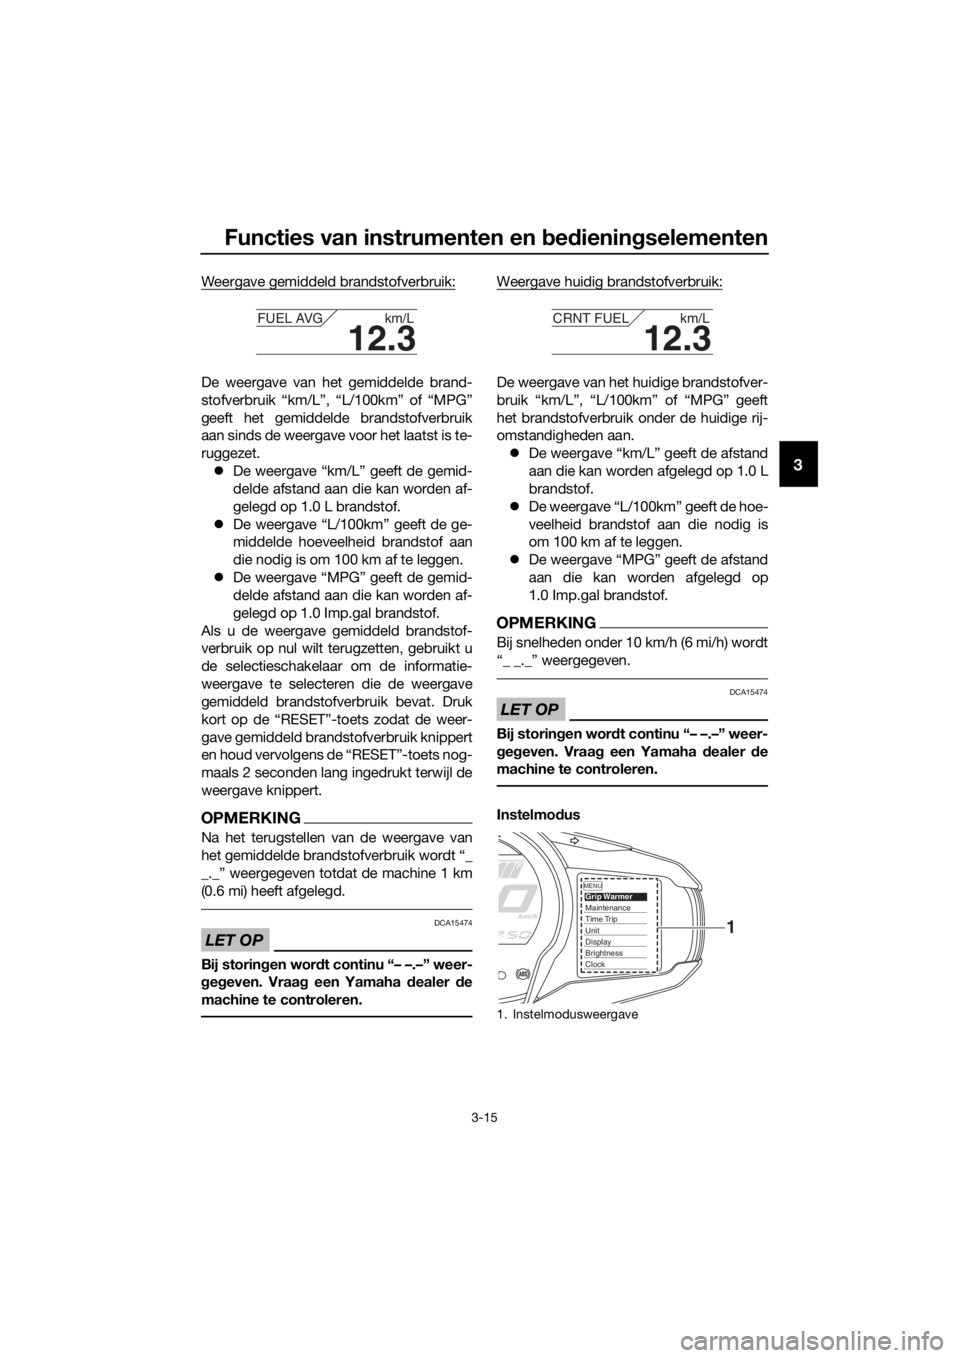 YAMAHA FJR1300A 2016  Instructieboekje (in Dutch) Functies van instrumenten en bed ienin gselementen
3-15
3
Weergave gemiddeld brandstofverbruik:
De weergave van het gemiddelde brand-
stofverbruik “km/L”, “L/100km” of “MPG”
geeft het gemi